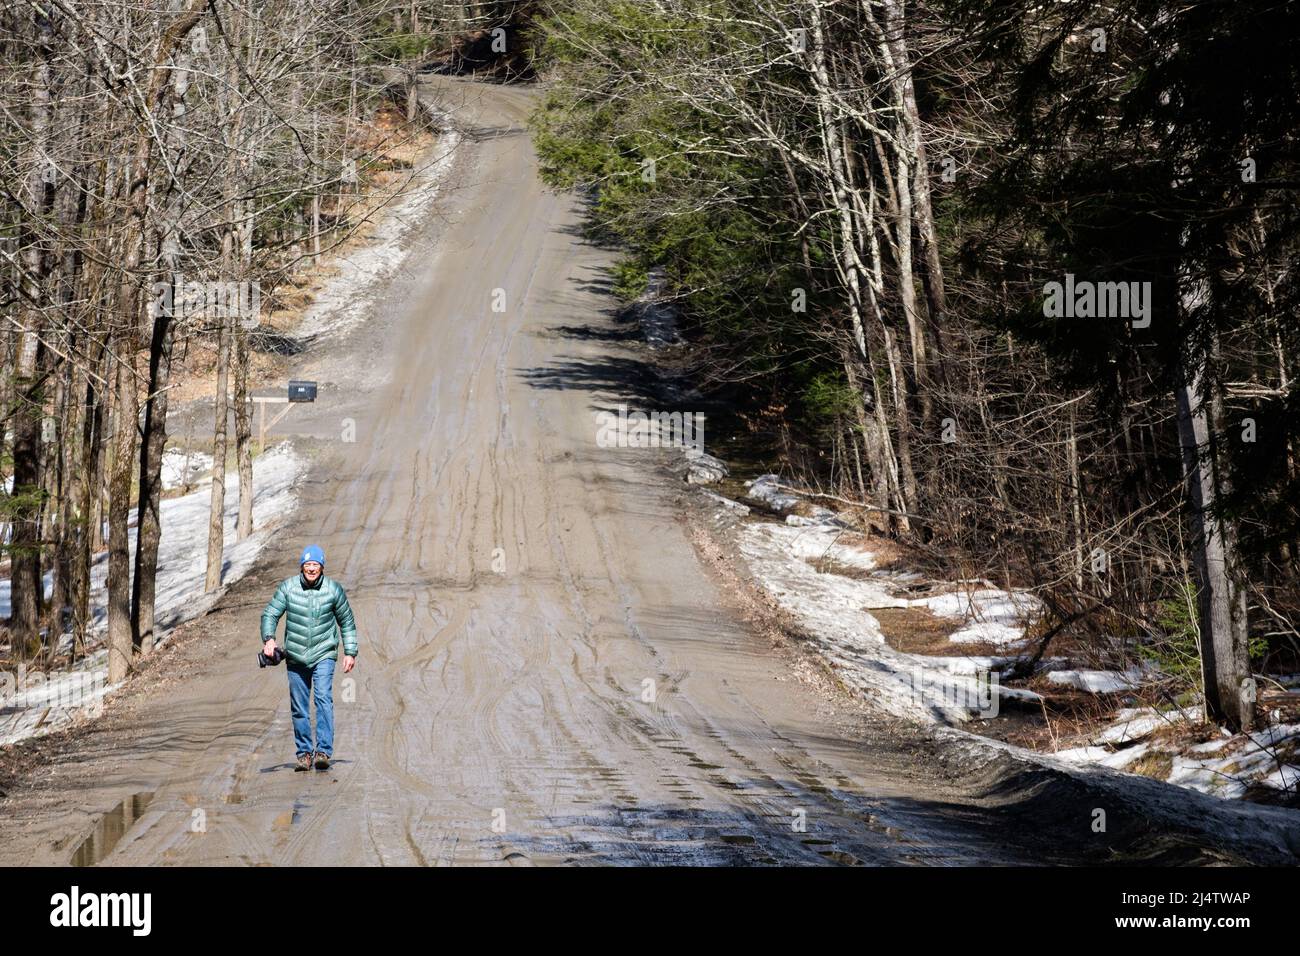 Einzelgänger in der Schlammsaison, der Abstieg von Vermont Schotterstraßen in Schlammmoor, findet jedes Frühjahr statt, in der Regel im März und April. Bundesstaat Vermont, USA. Stockfoto